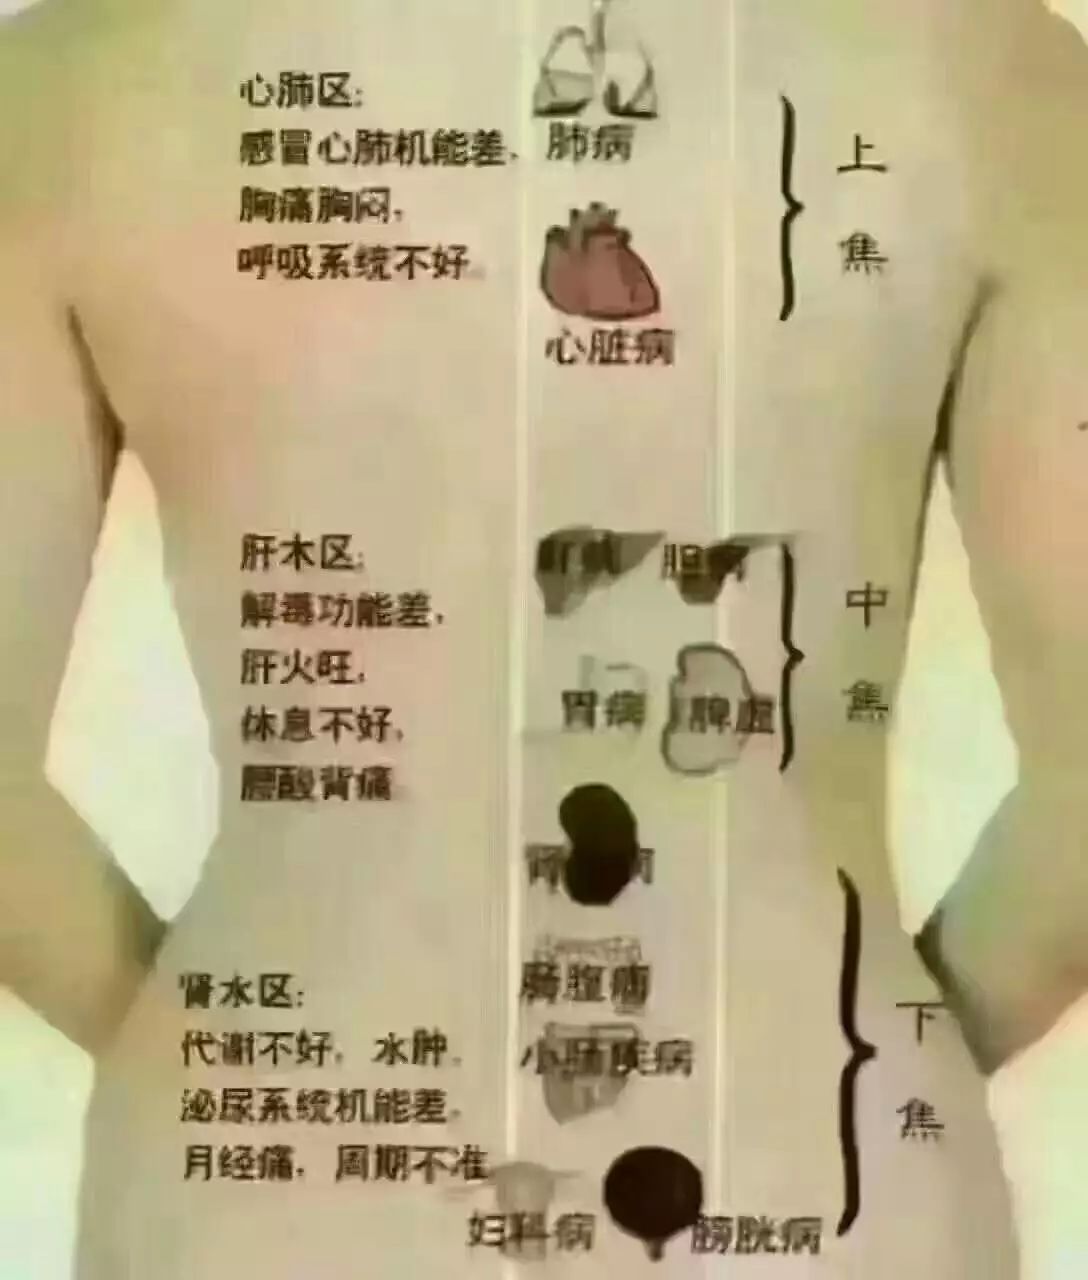 王晓萍增寿堂专业调理根治:鼻炎,咽炎,皮肤病,胃